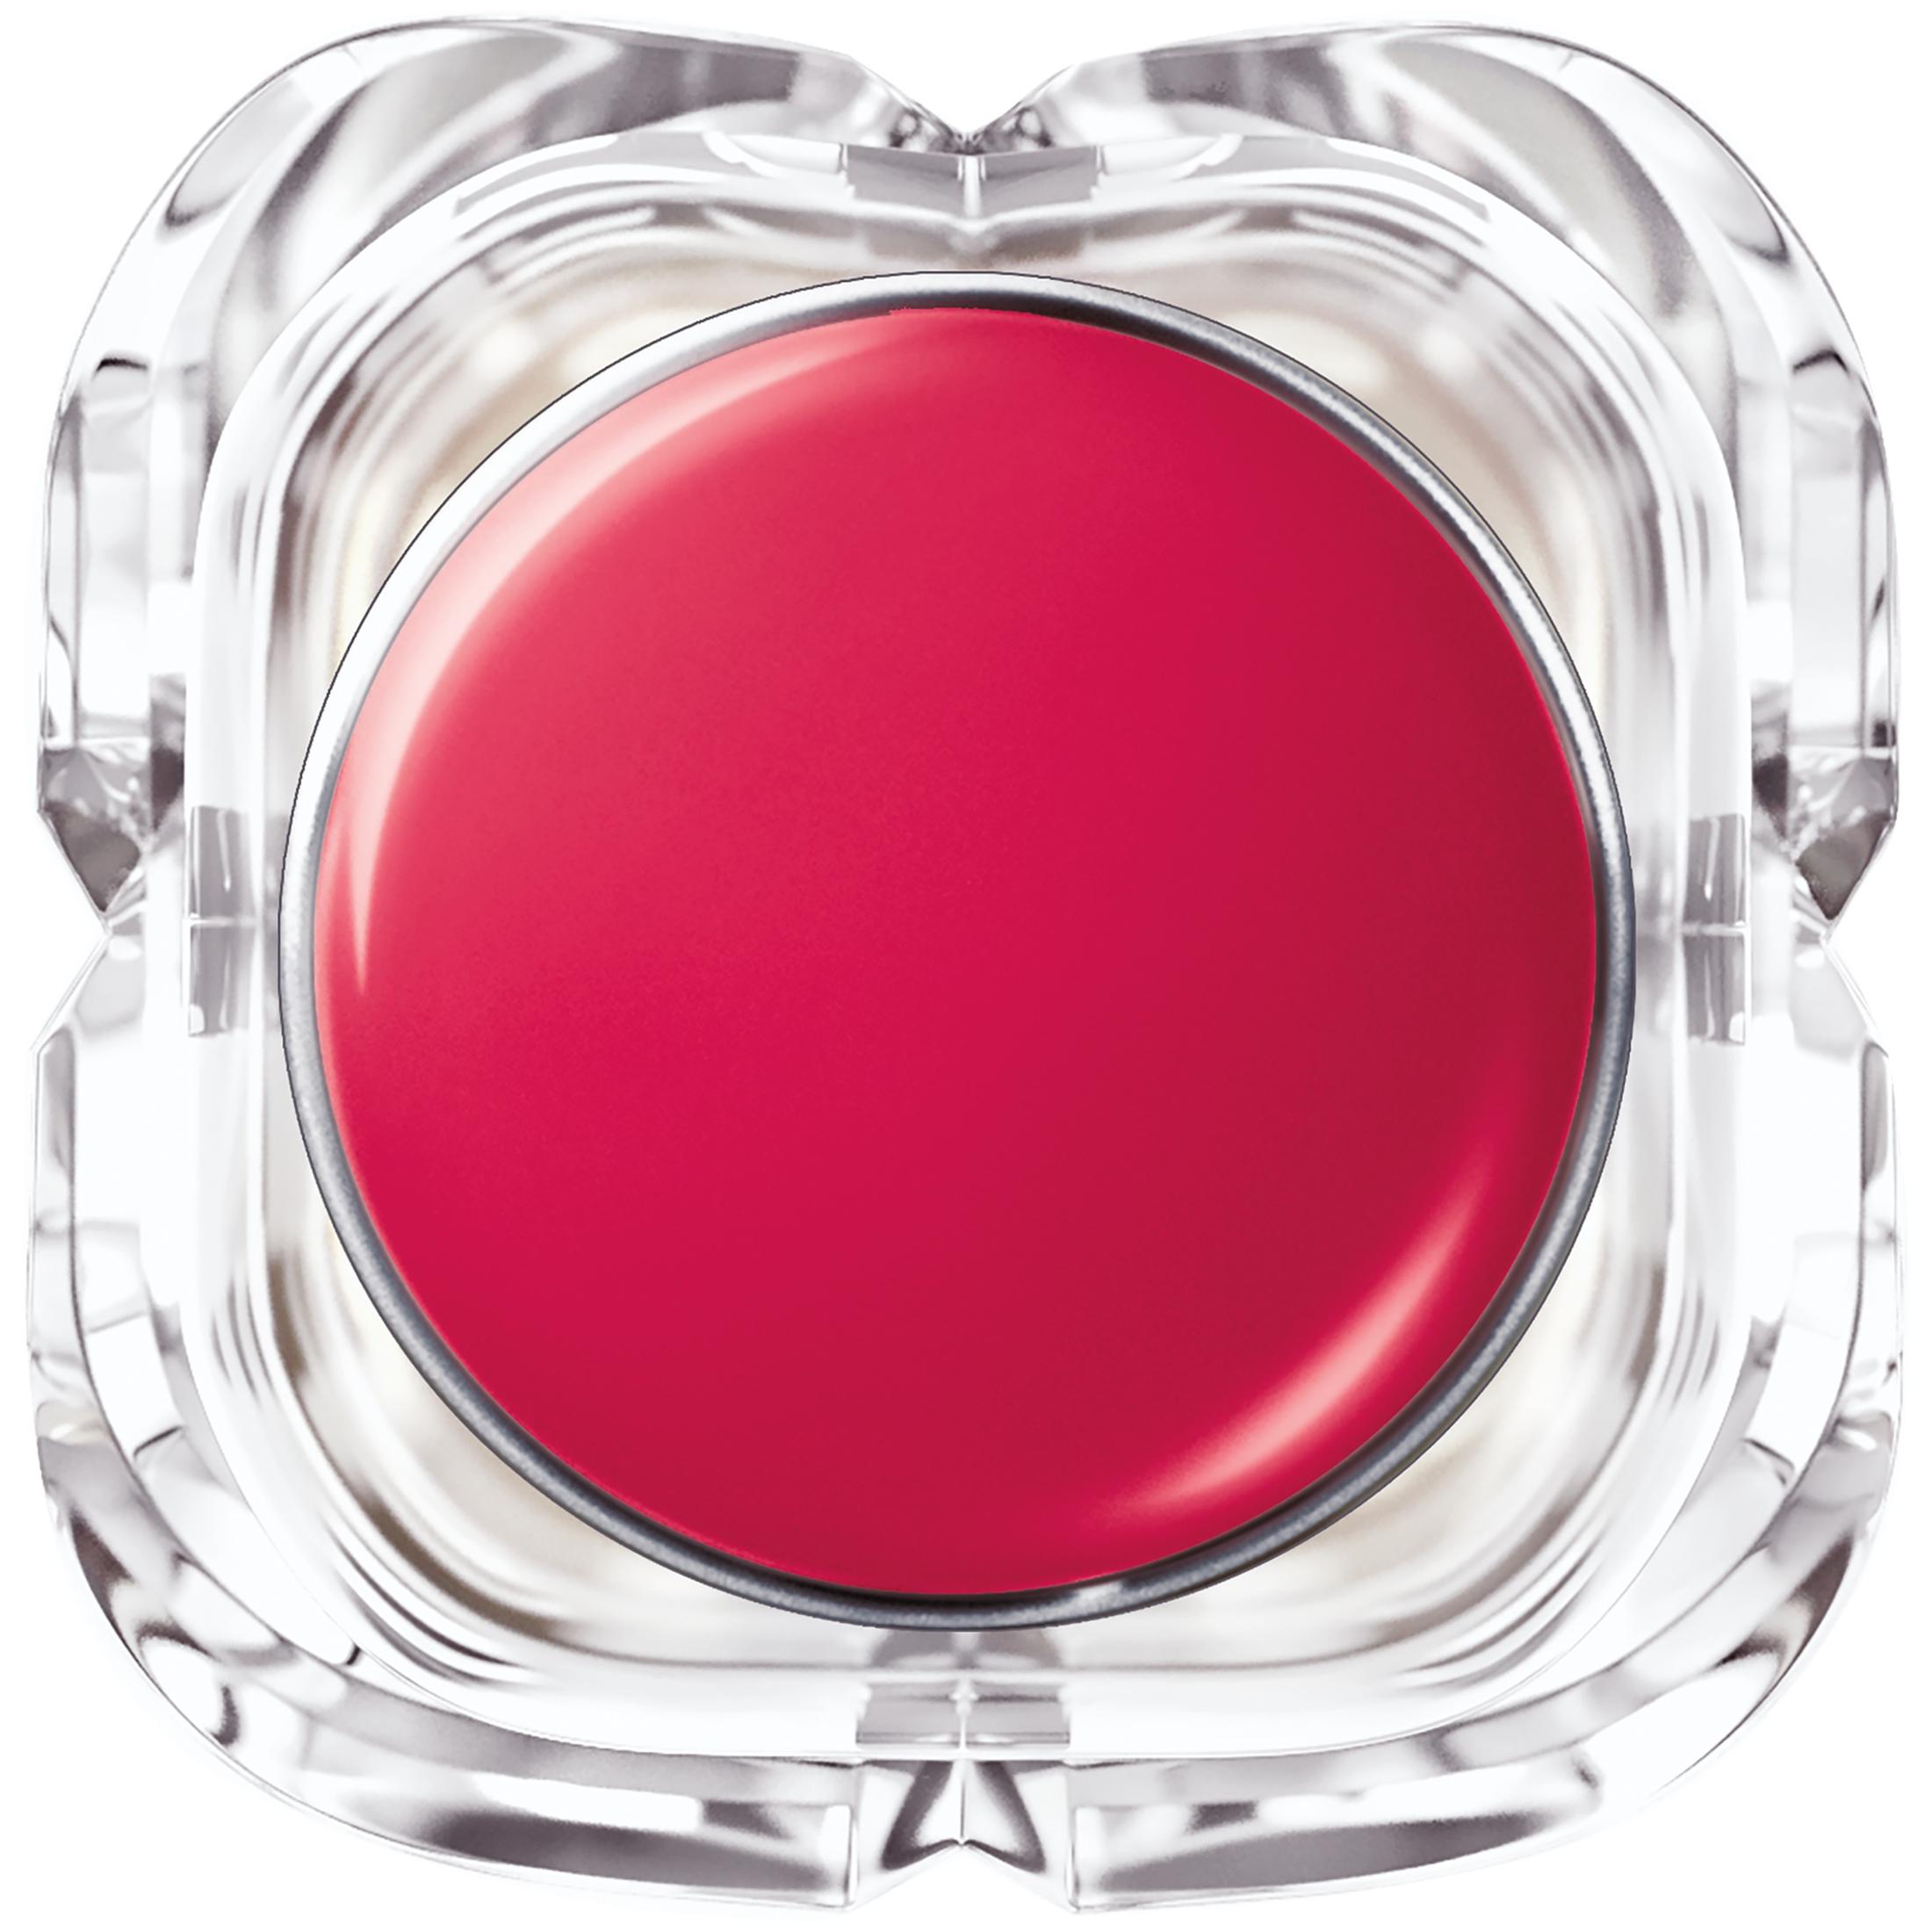 L'Oreal Paris Colour Riche Shine Glossy Ultra Rich Lipstick, Lacquered Strawberry - image 5 of 5